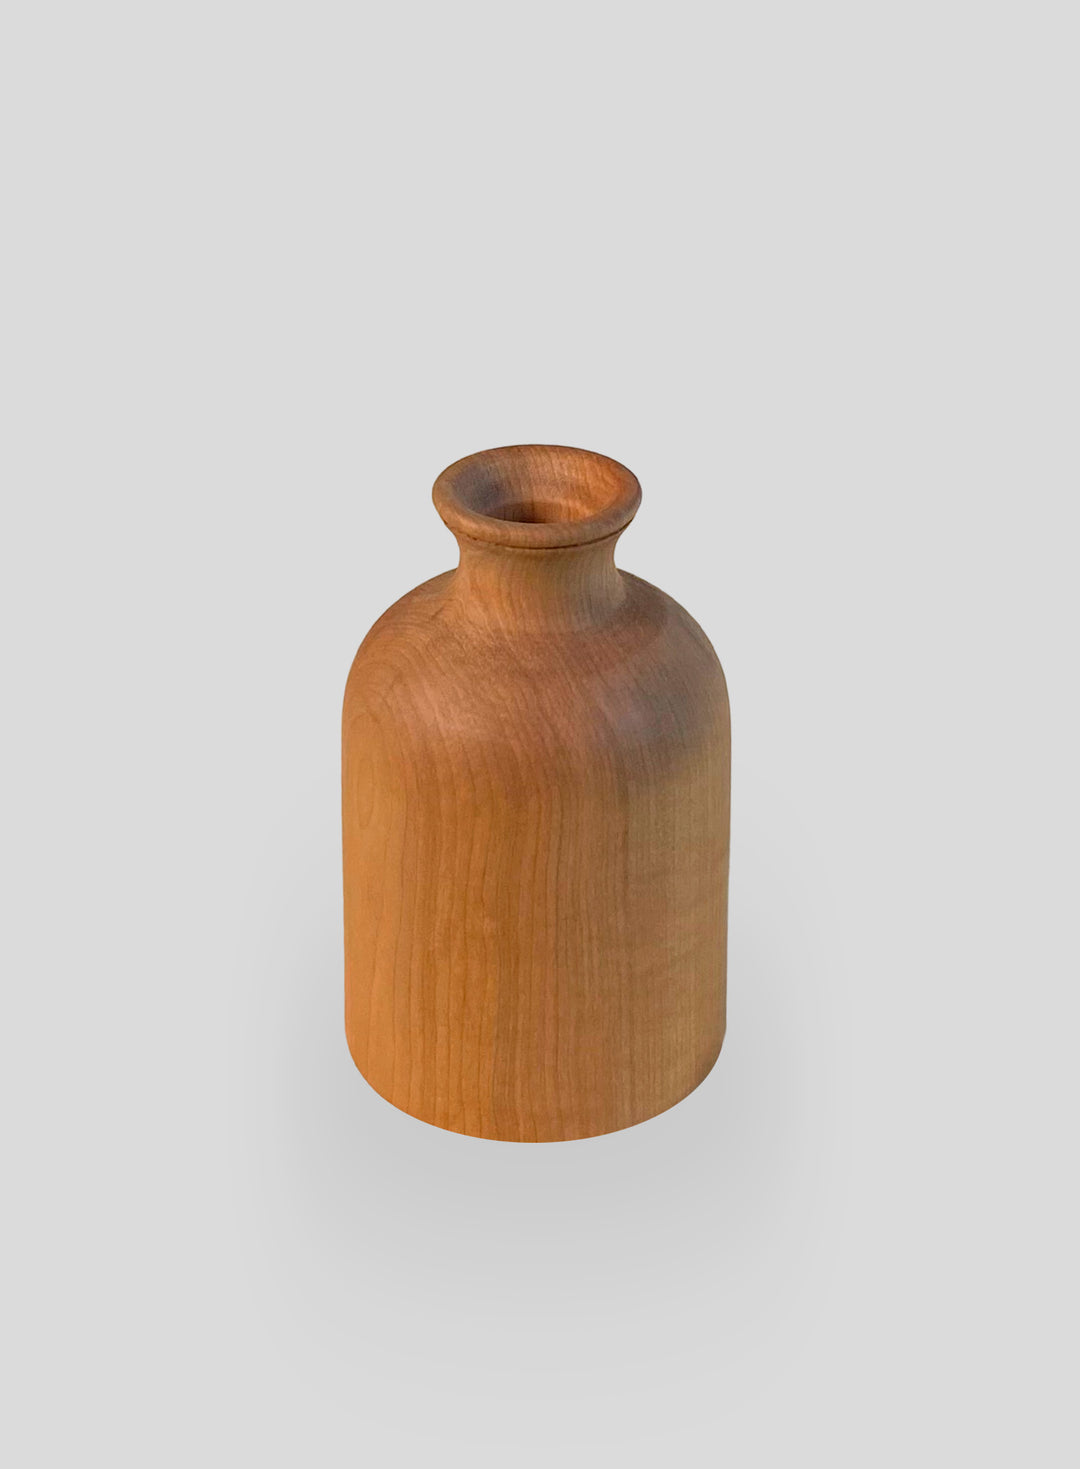 The Demijohn Vase in Fireland Cherry